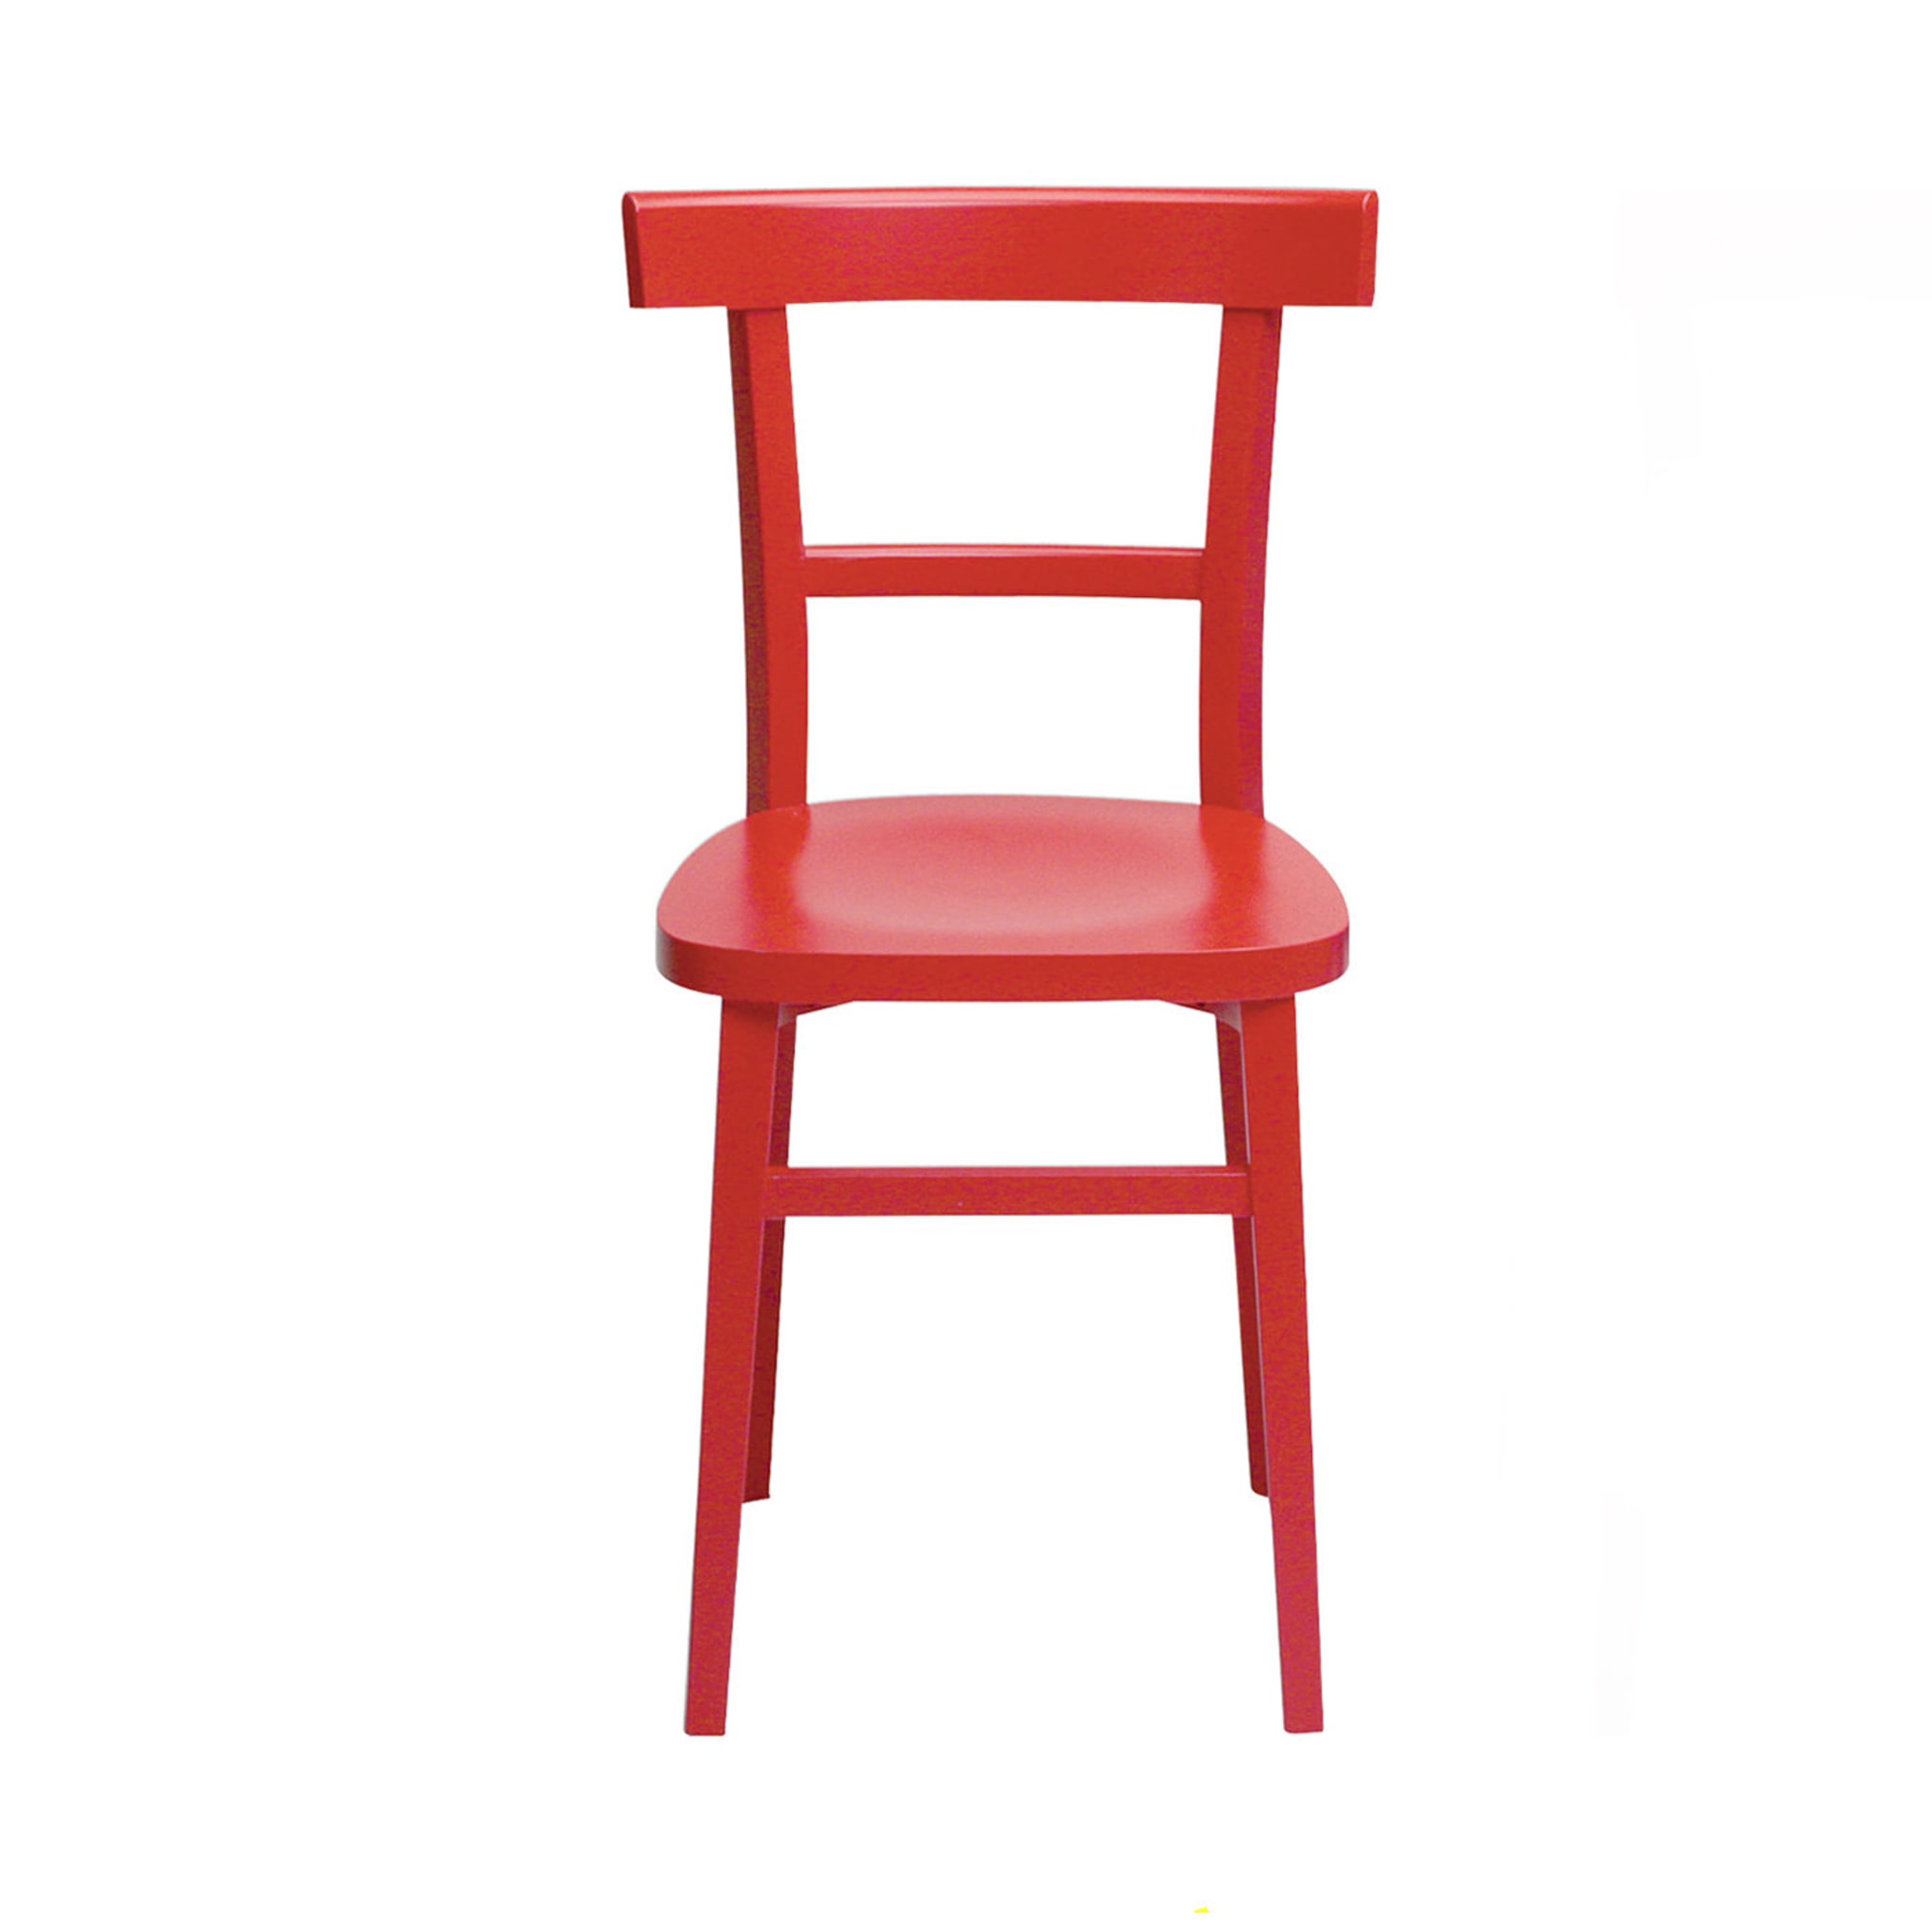 Satz von 2 roten durchbrochenen Stühlen - Hauptansicht